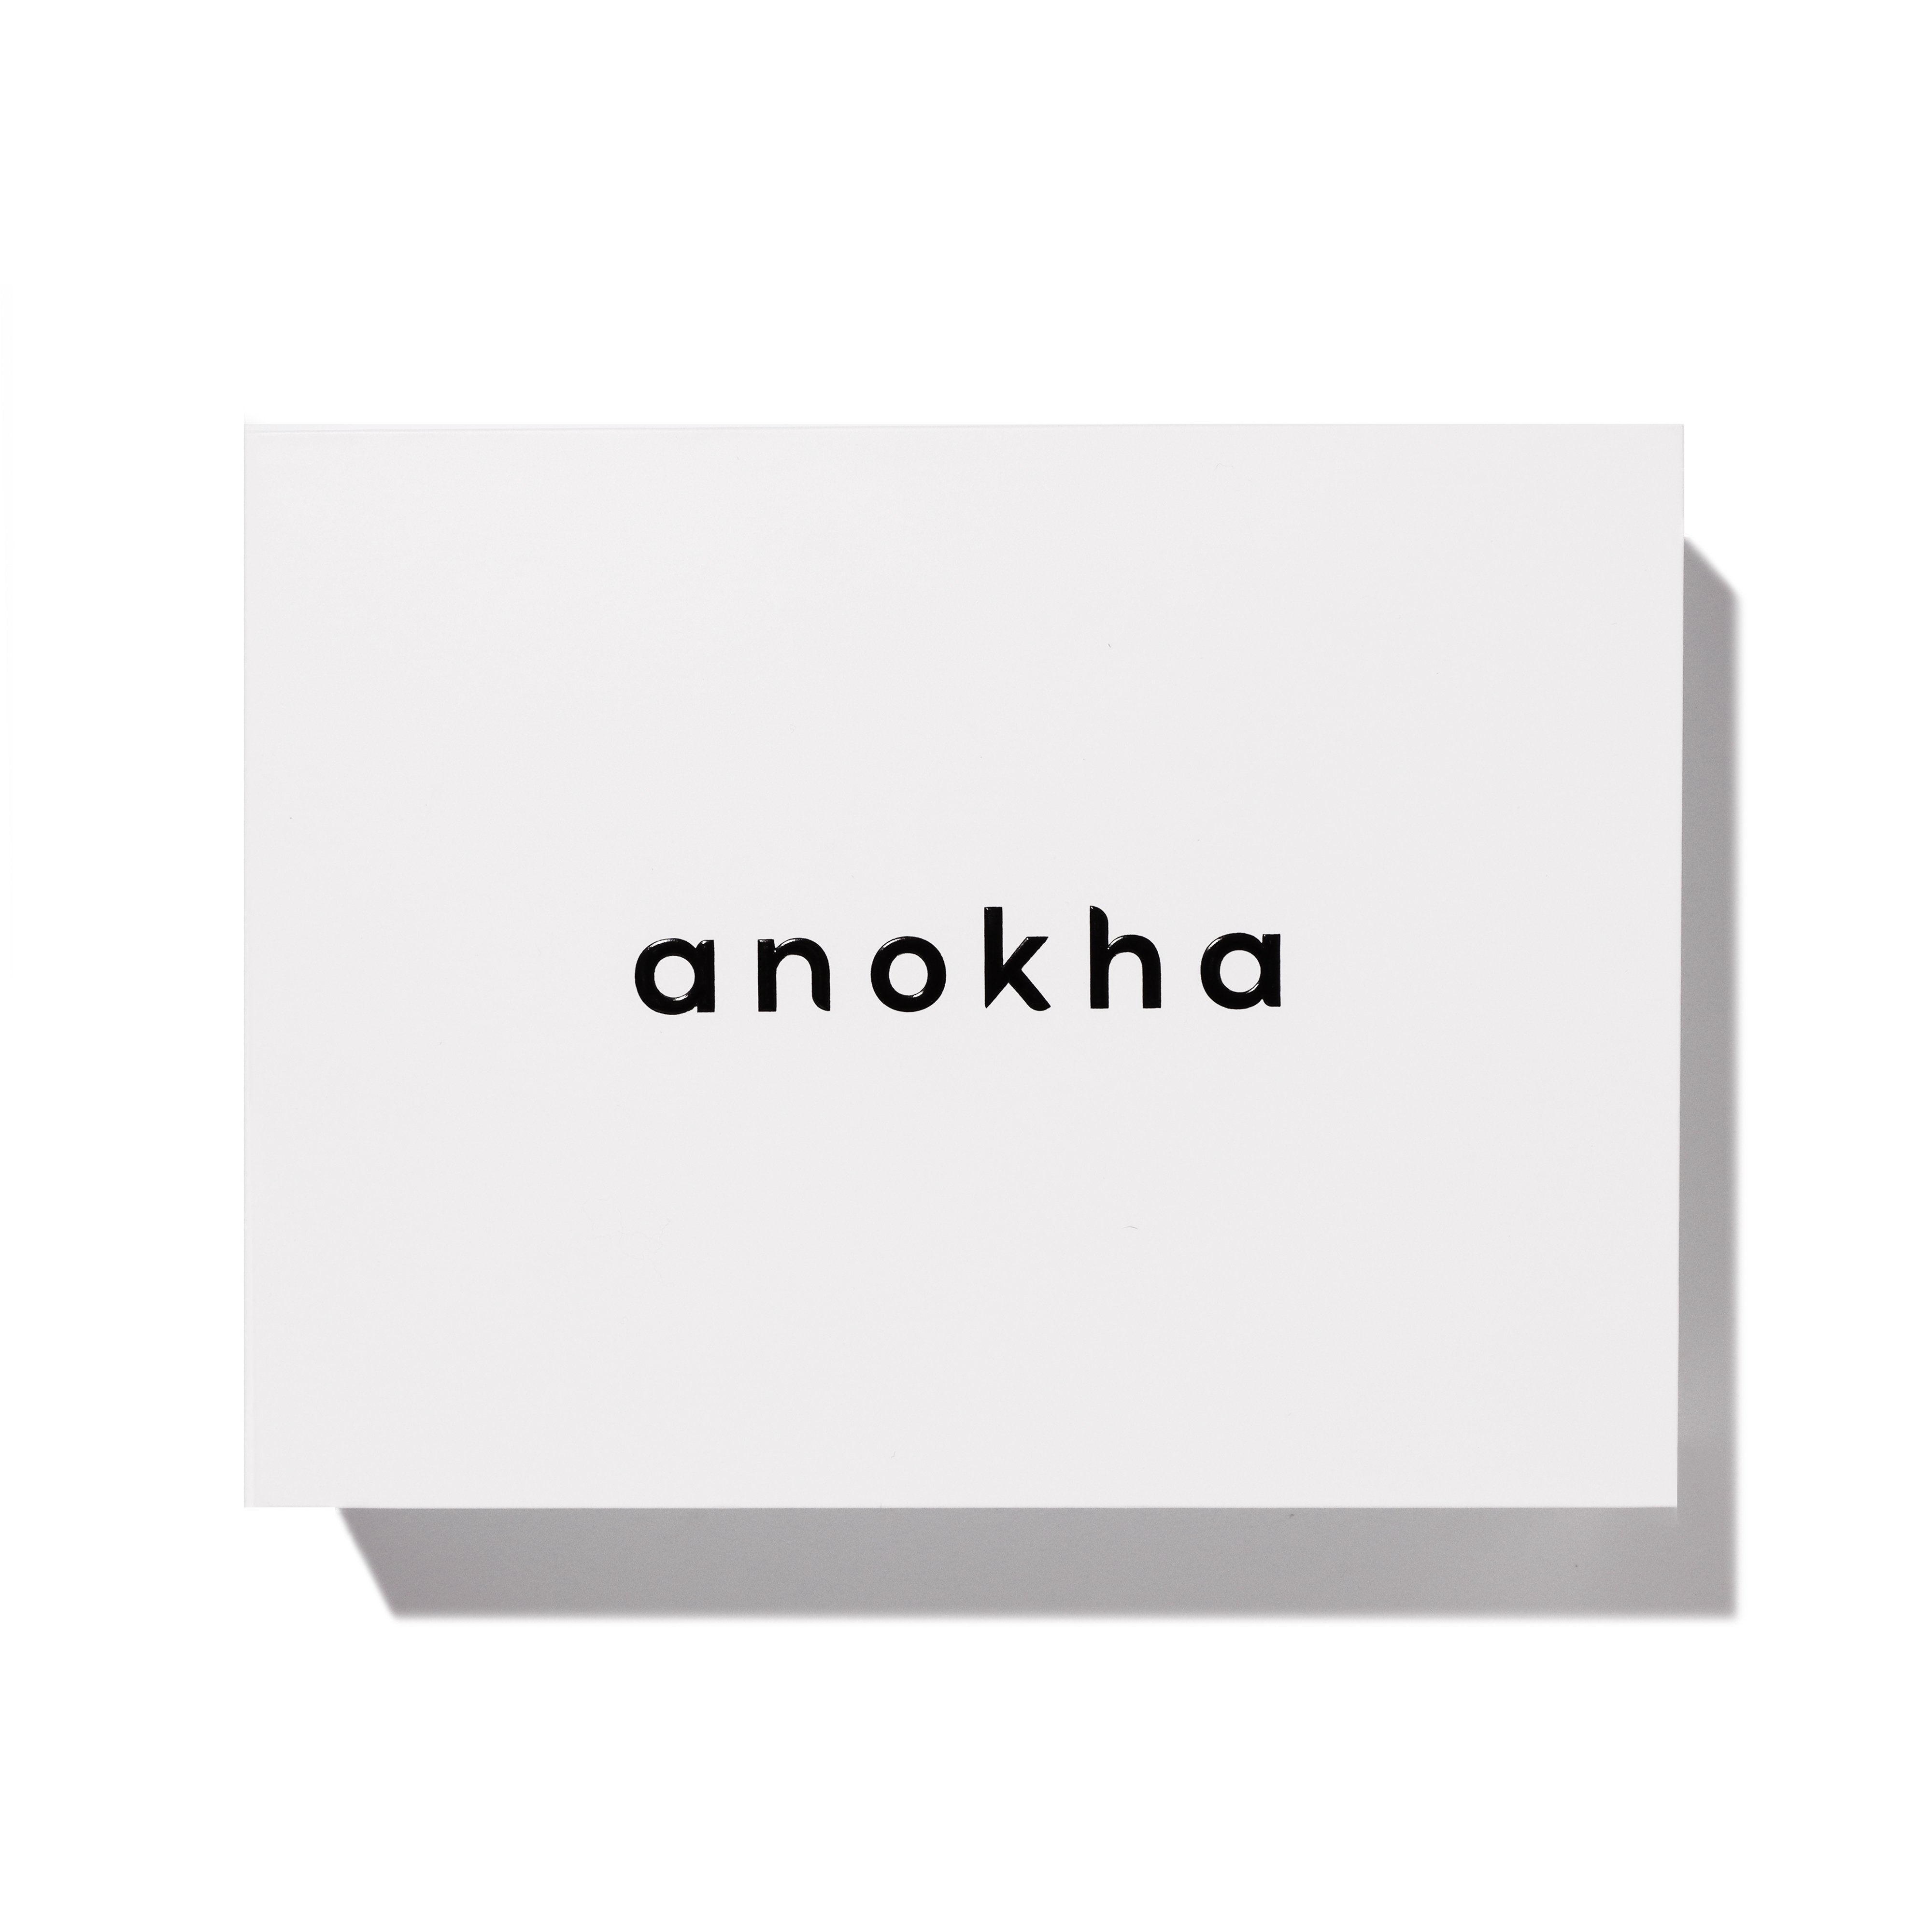 anokha masque the gift set white box